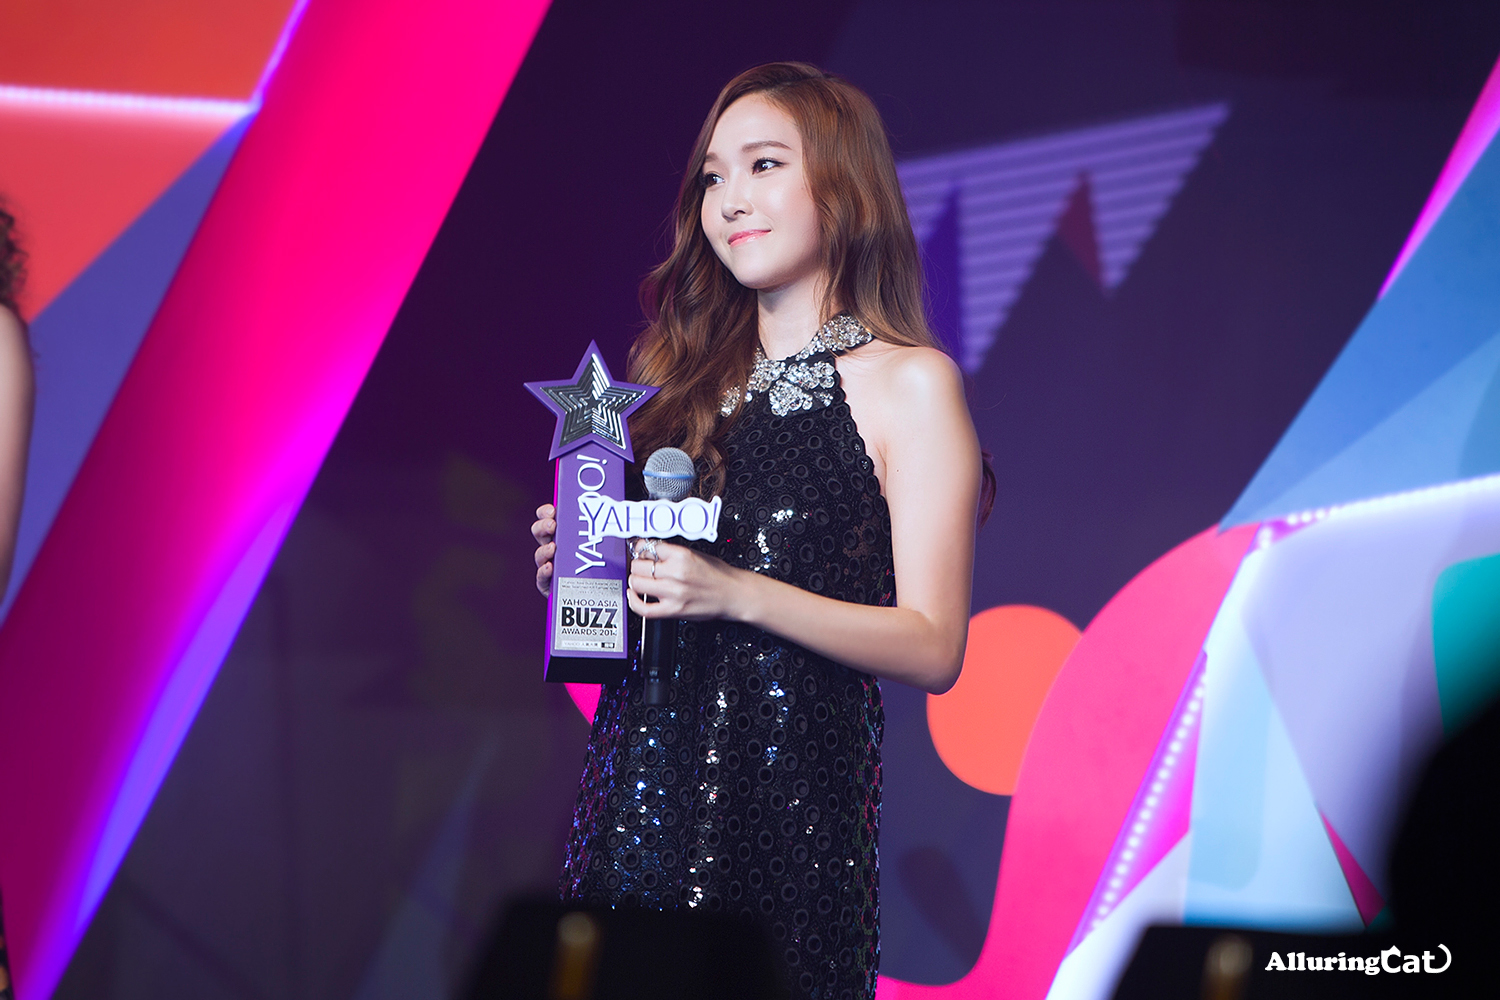 [PIC][07-12-2014]Jessica khởi hành đi Hồng Kông để tham dự "Yahoo Asia Buzz Award 2014" vào sáng nay - Page 3 2433BB3954B515B313BF22